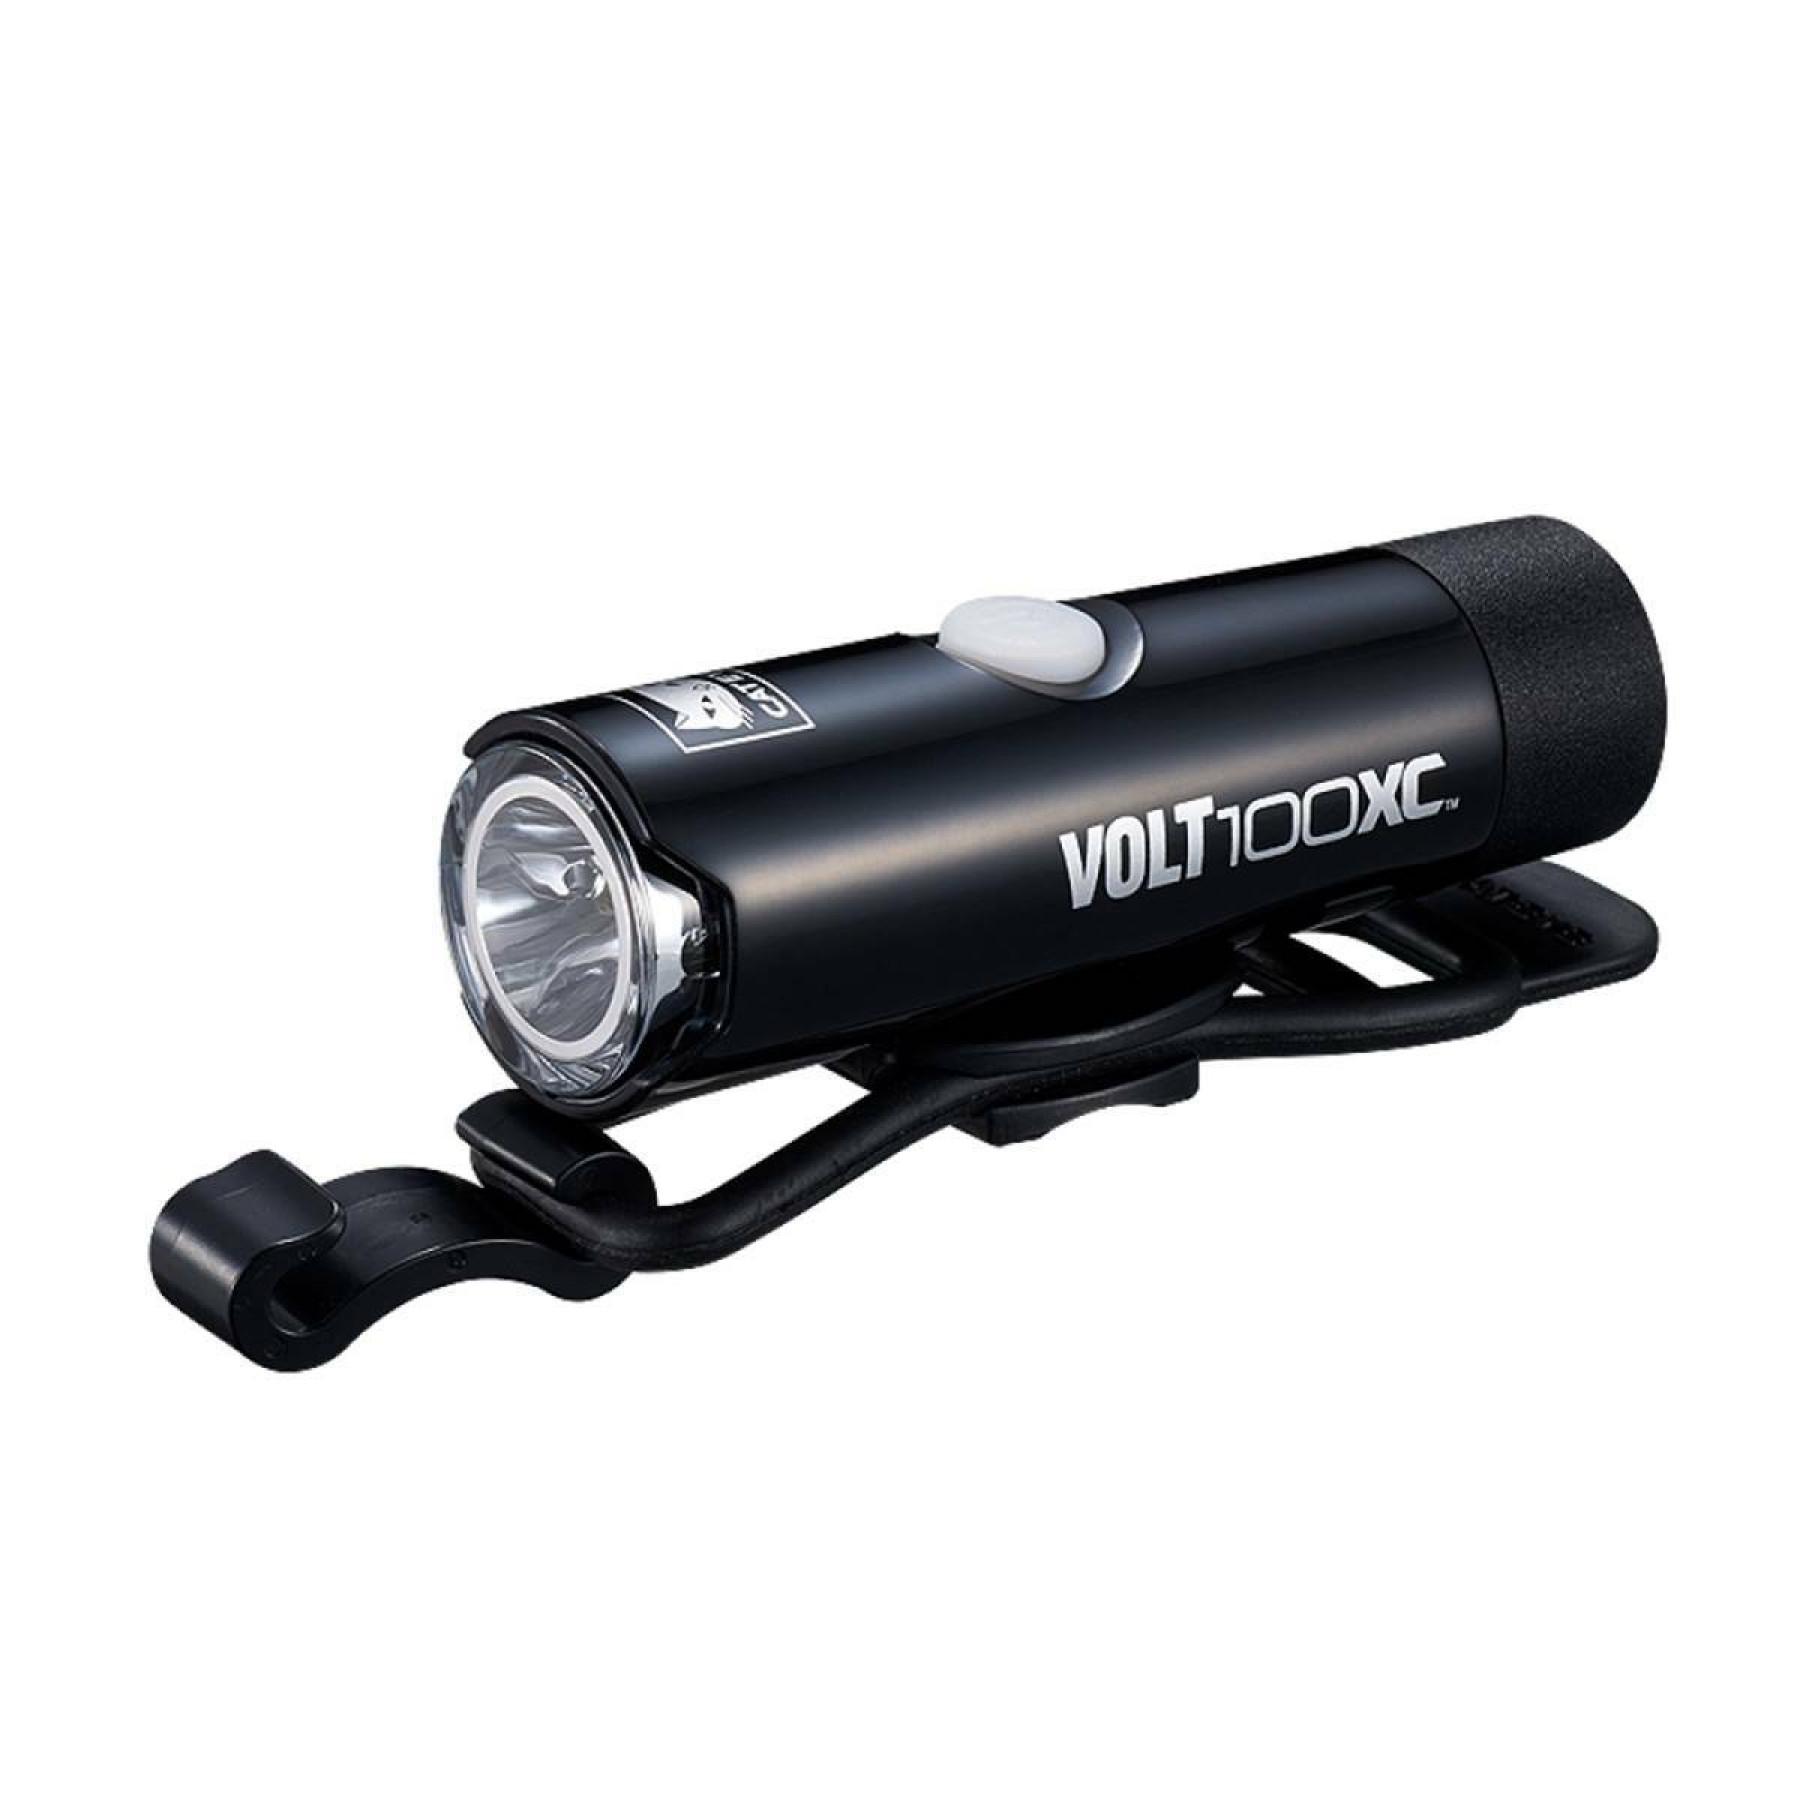 Éclairage Cateye Volt 100 XC rechargeable/Orb pile